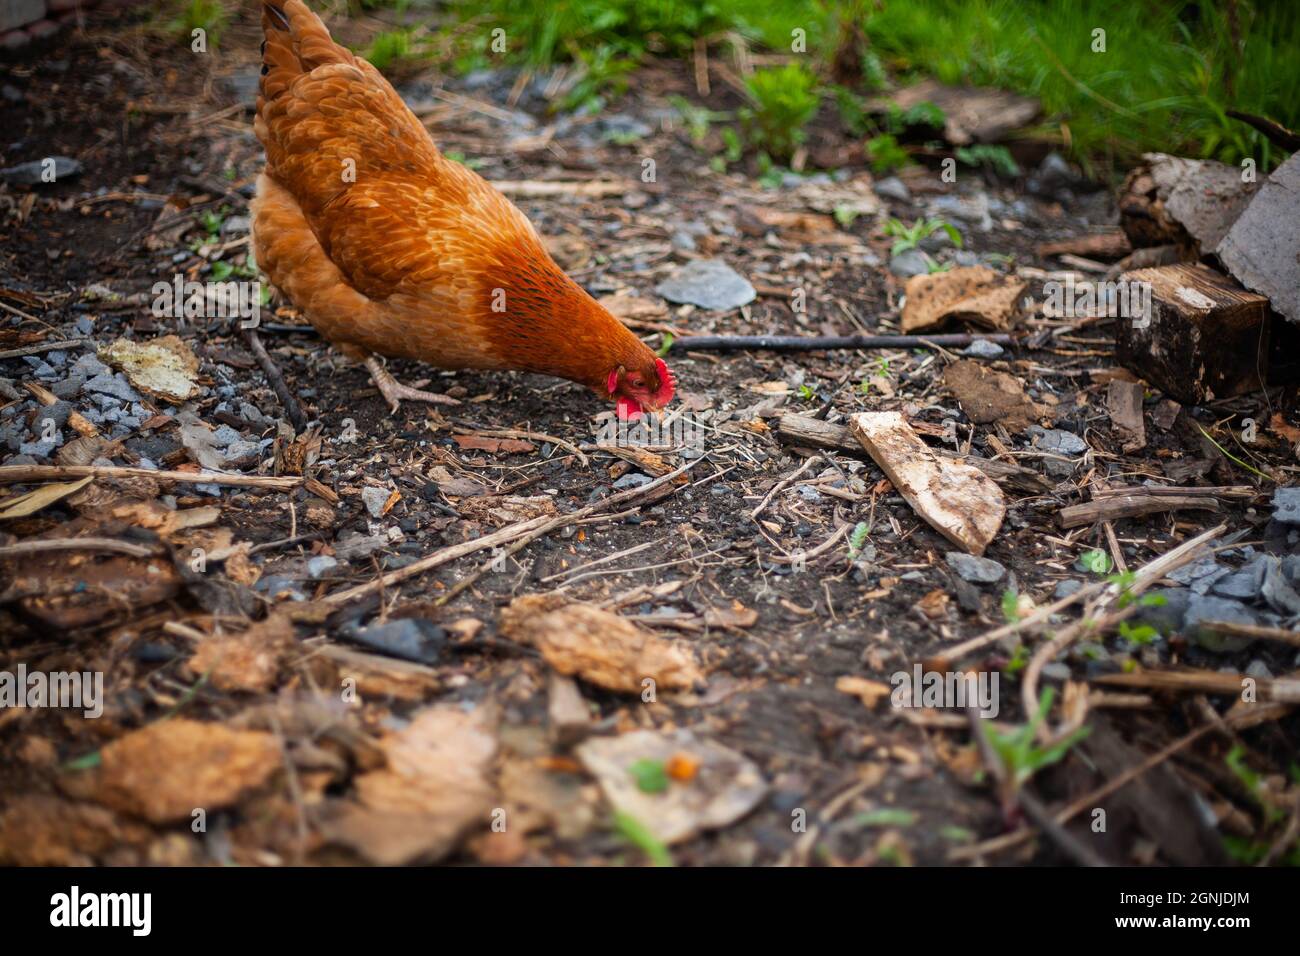 Hühnerfütterung auf dem Boden | Foto schließen von einem braunen Huhn auf einem Bauernhof, das etwas auf dem Boden mit Gras im Hintergrund sieht Stockfoto